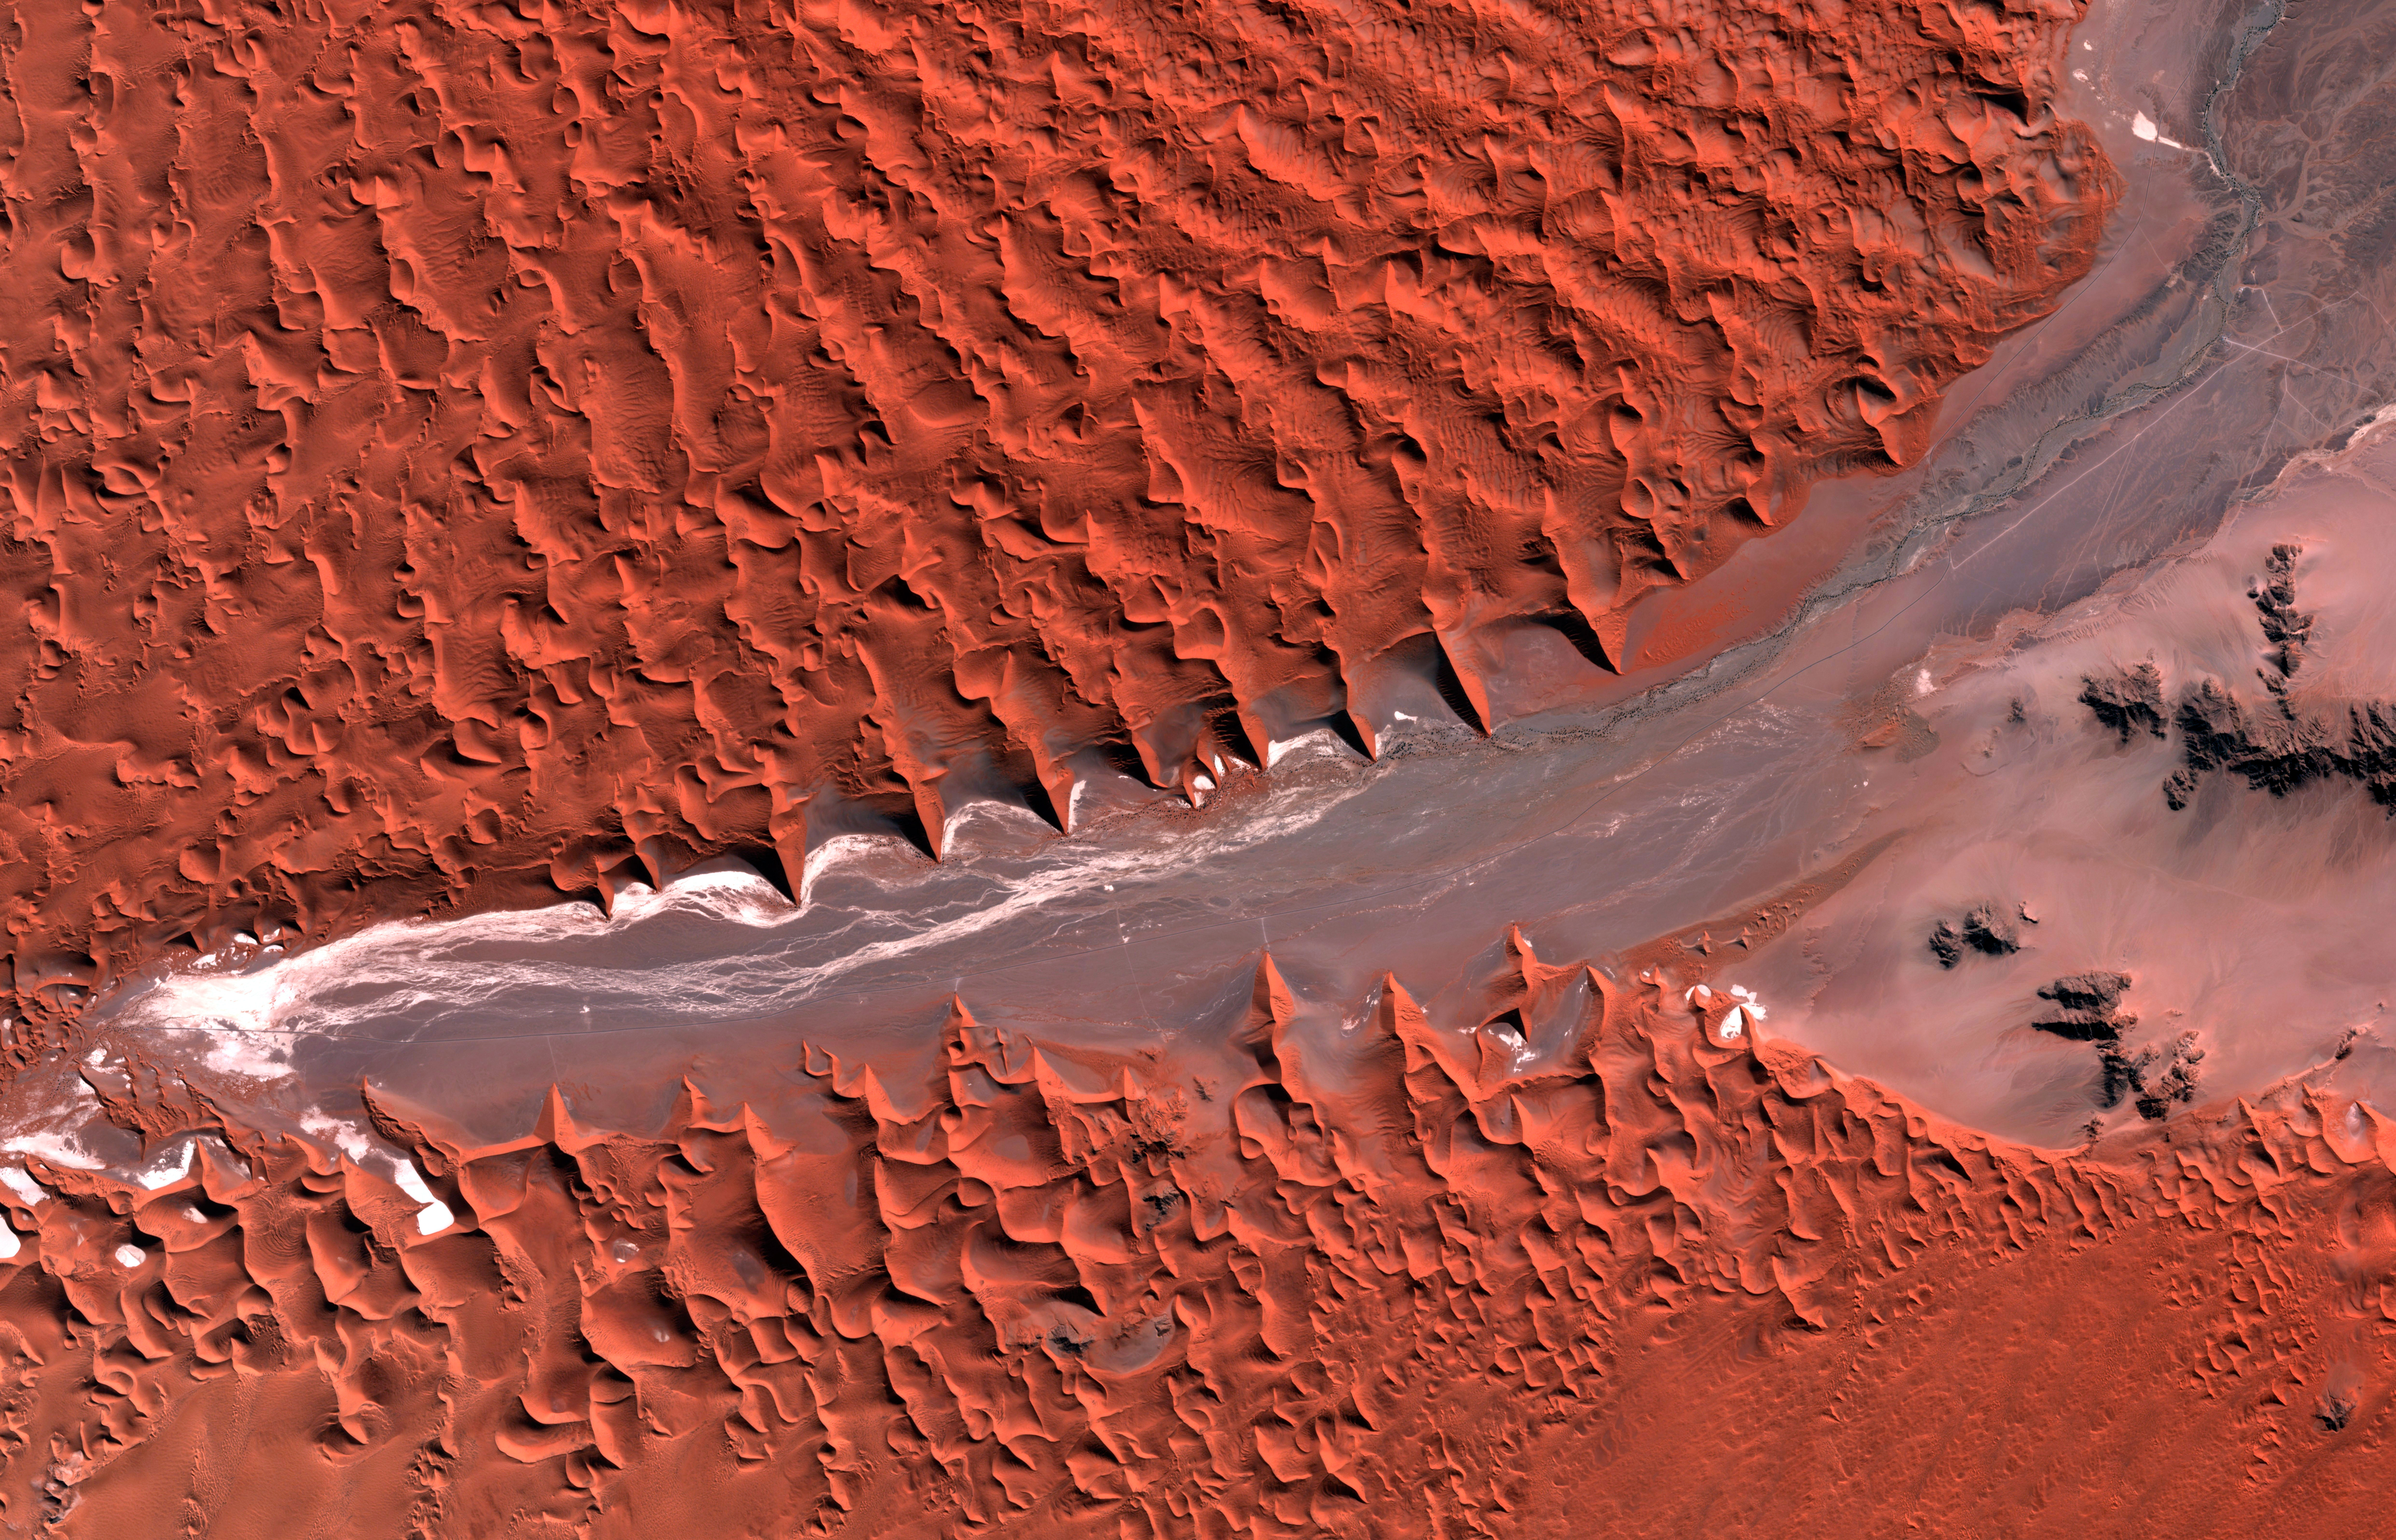 Desierto del Namib, Namibia (24°42'51.43"S, 15°29'22.71"E), Sentinel 2 (21-06-2019)